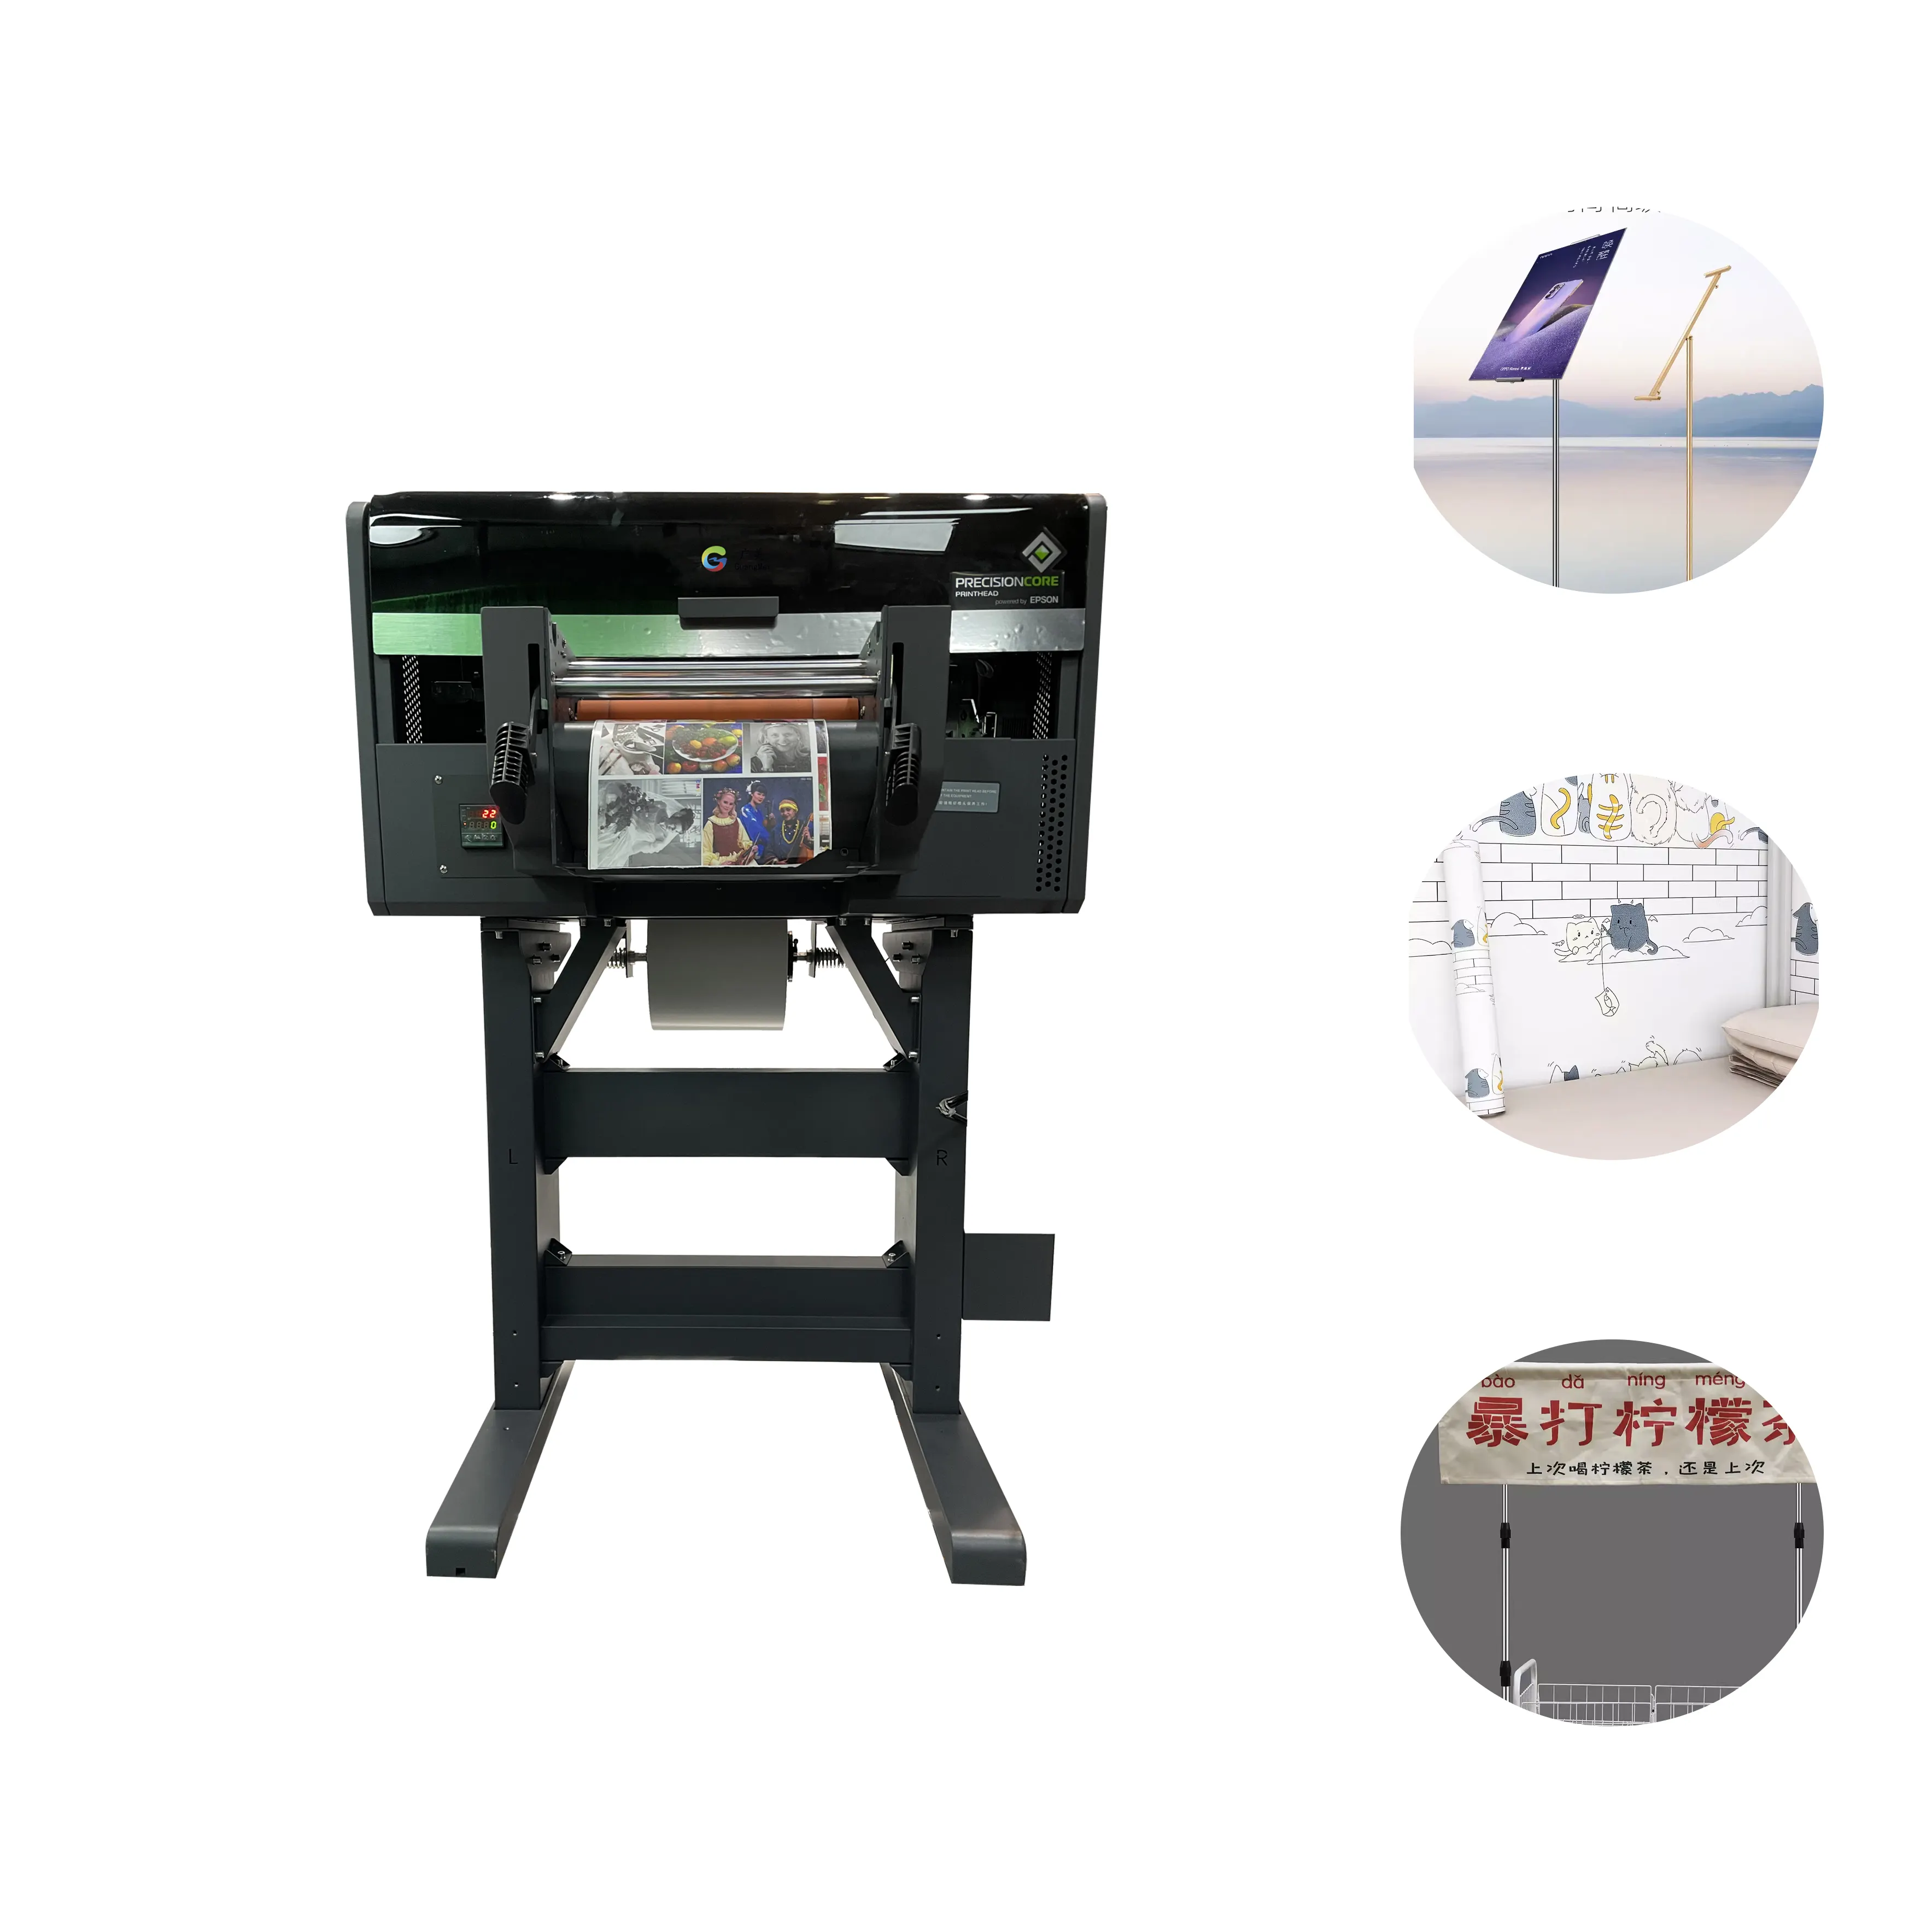 Impresora Printer UV Label Desktop tinggi pencetakan khusus Printer Waybill